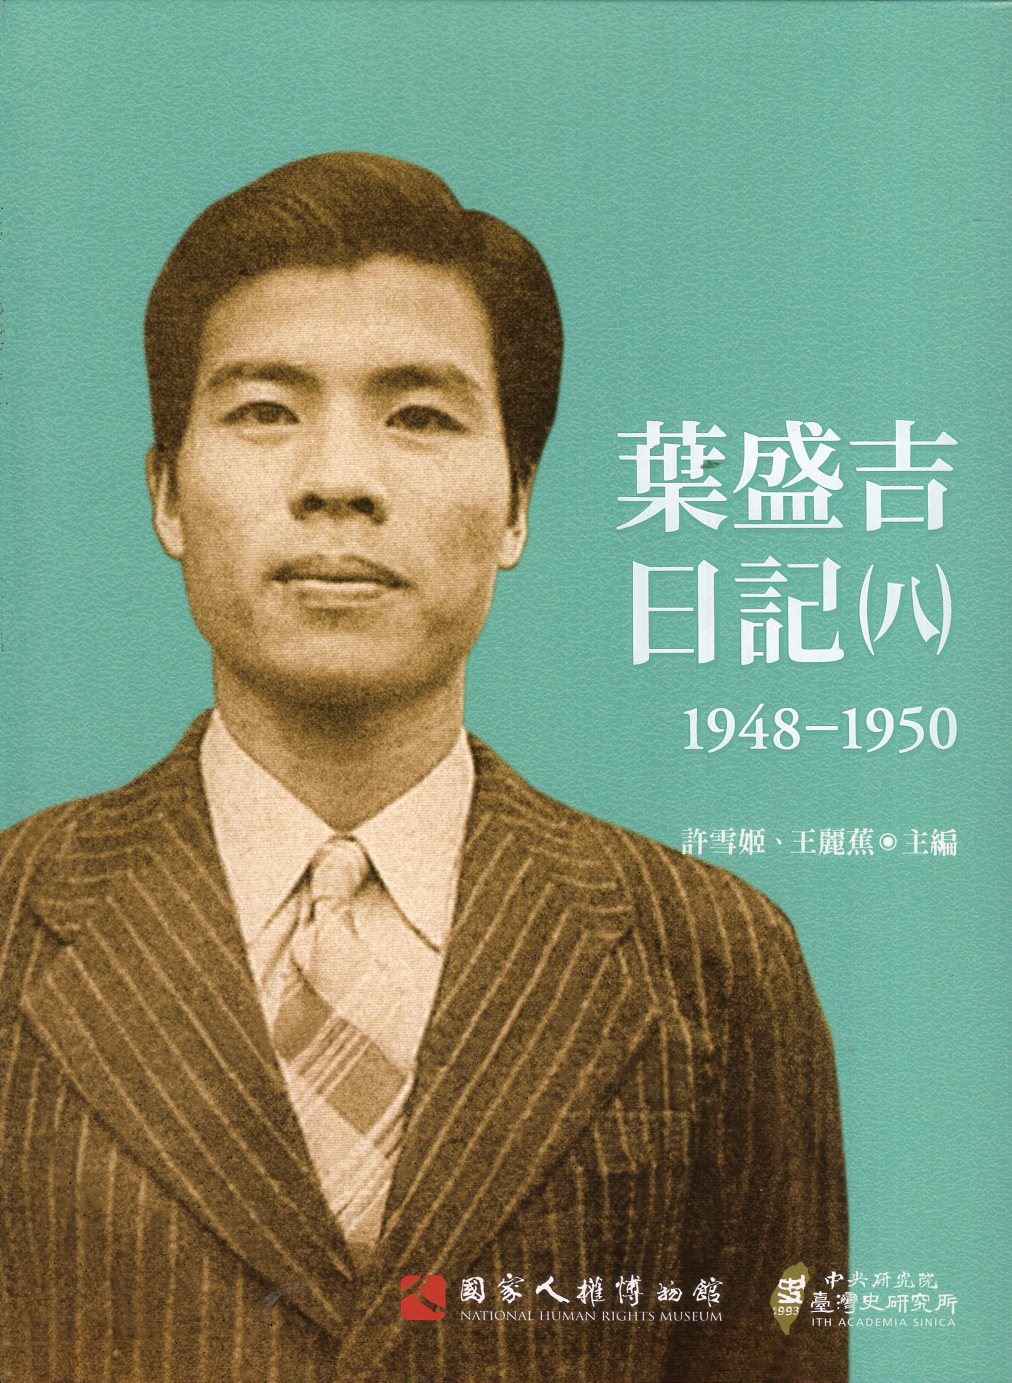 葉盛吉日記(八)1948-1950 的圖說